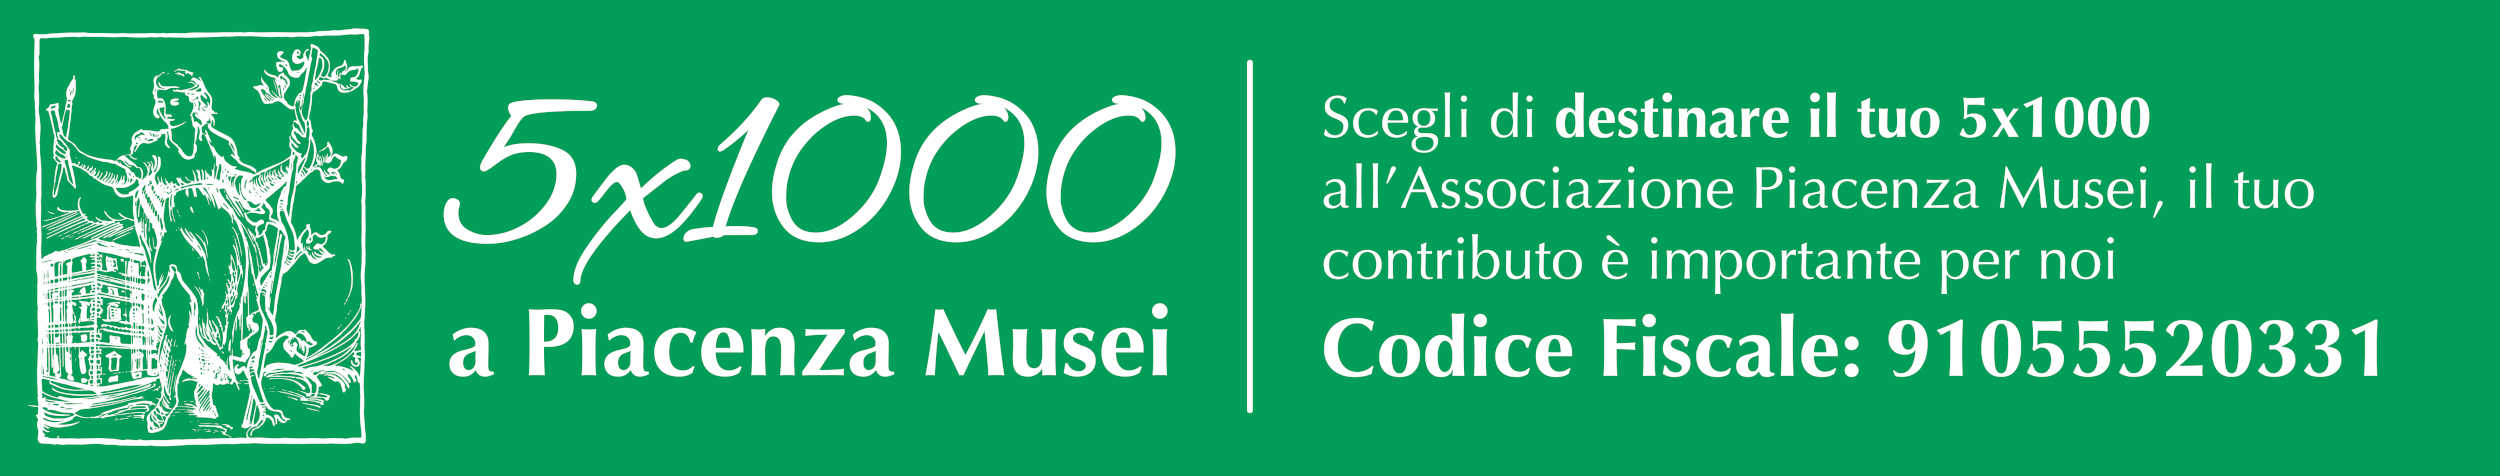 Scegli di destinare il tuo 5x1000 a Piacenza Musei. Codice Fiscale 91055520331